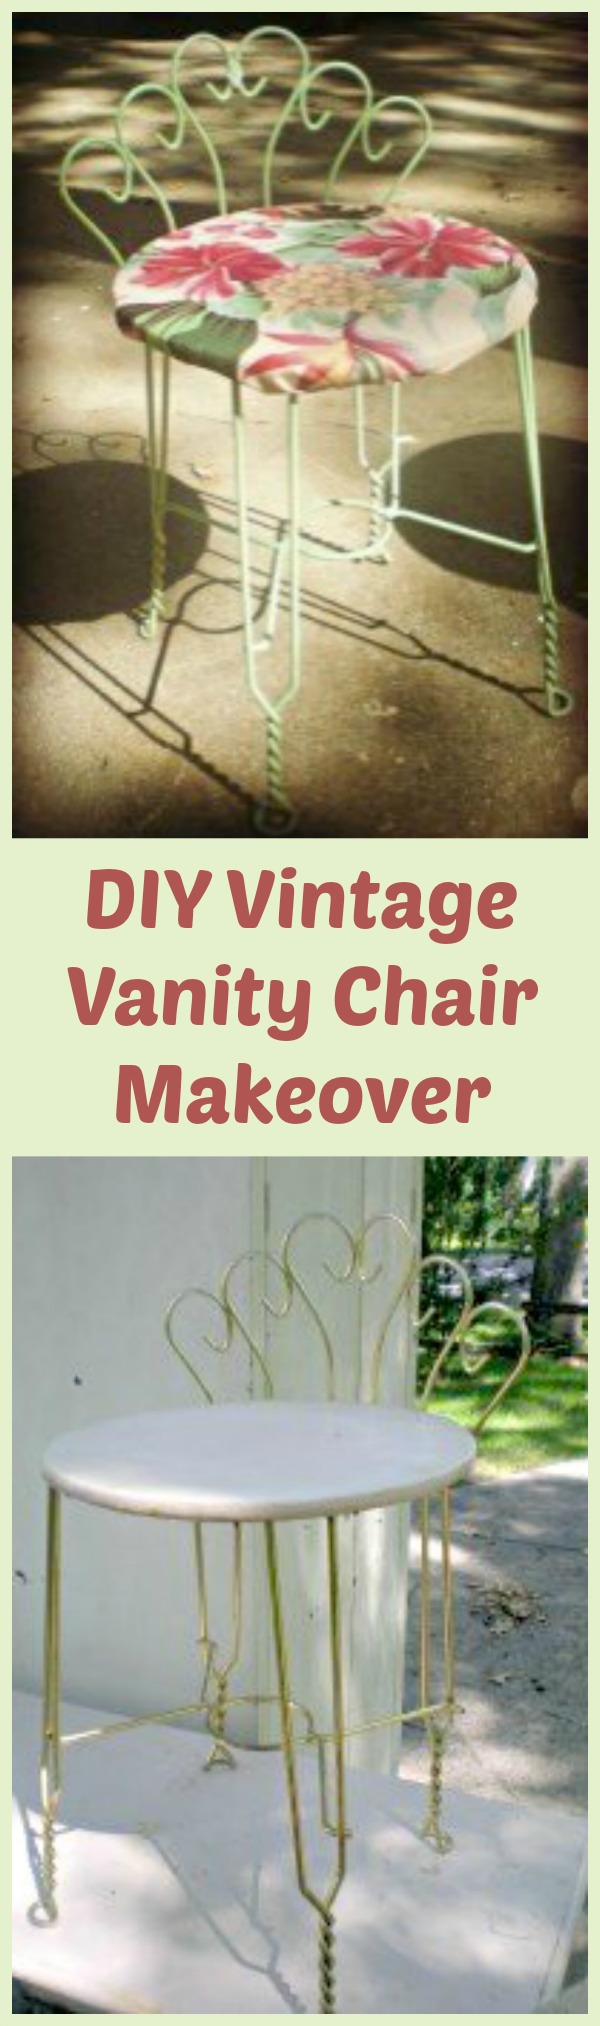 DIY Vintage Vanity Chair Makeover